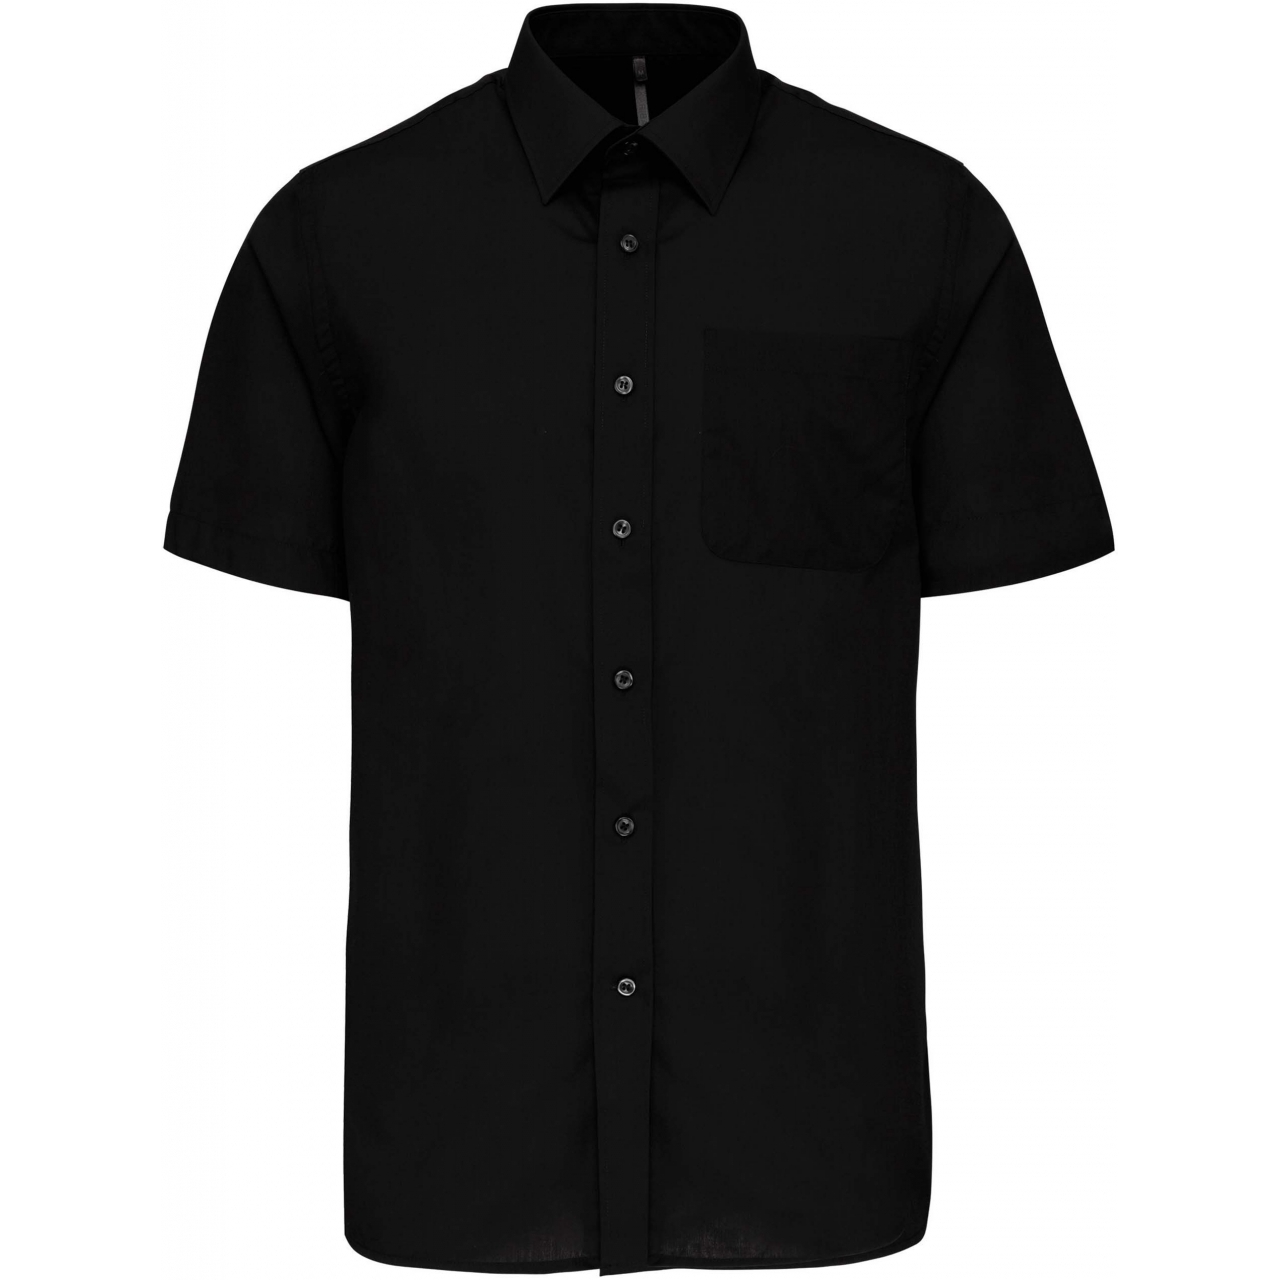 Pánská košile s krátkým rukávem Kariban ACE - černá, S